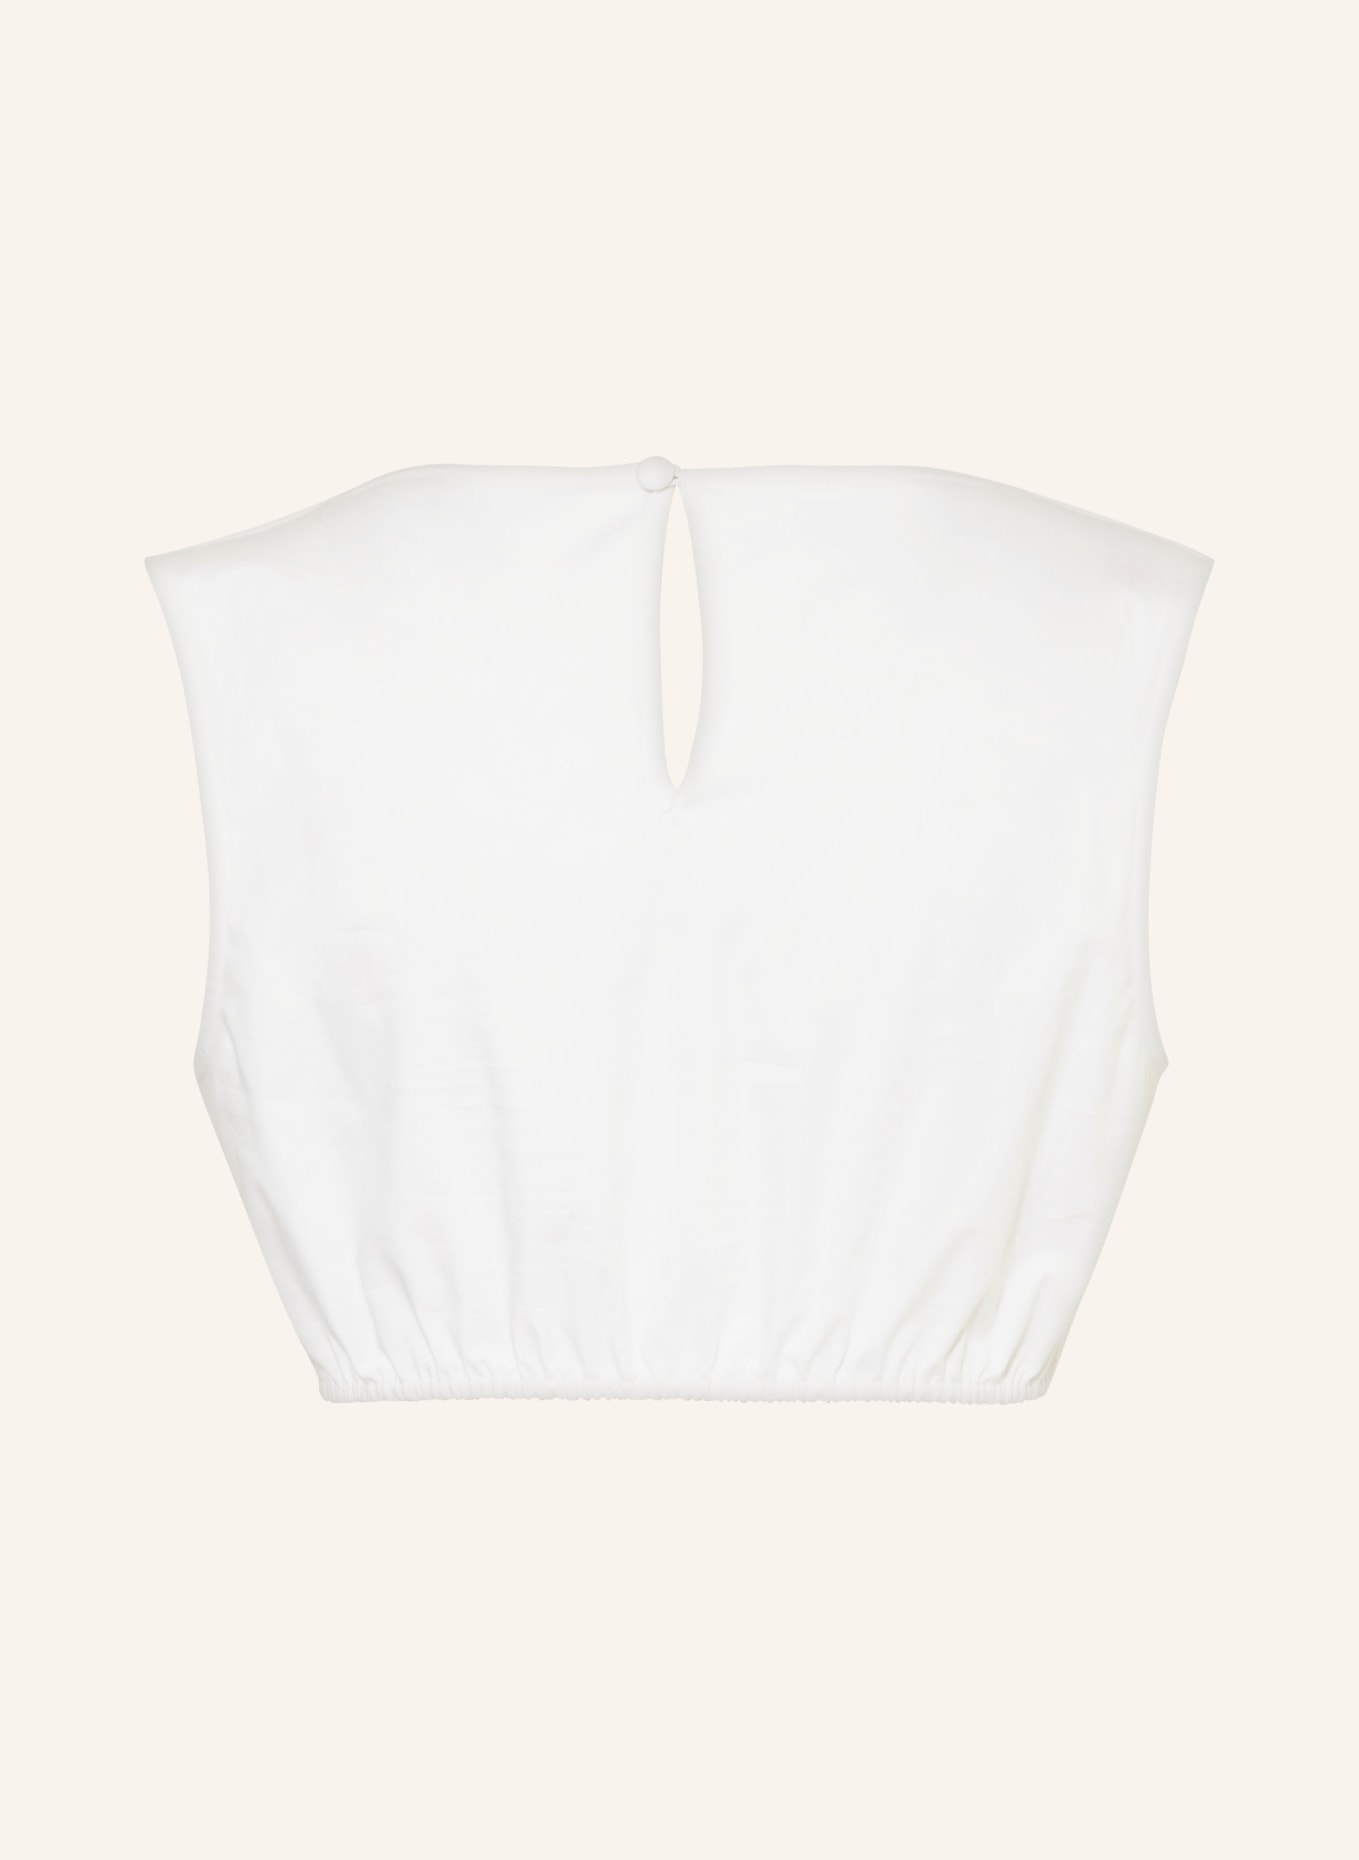 SPORTALM Dirndl blouse, Color: WHITE (Image 2)